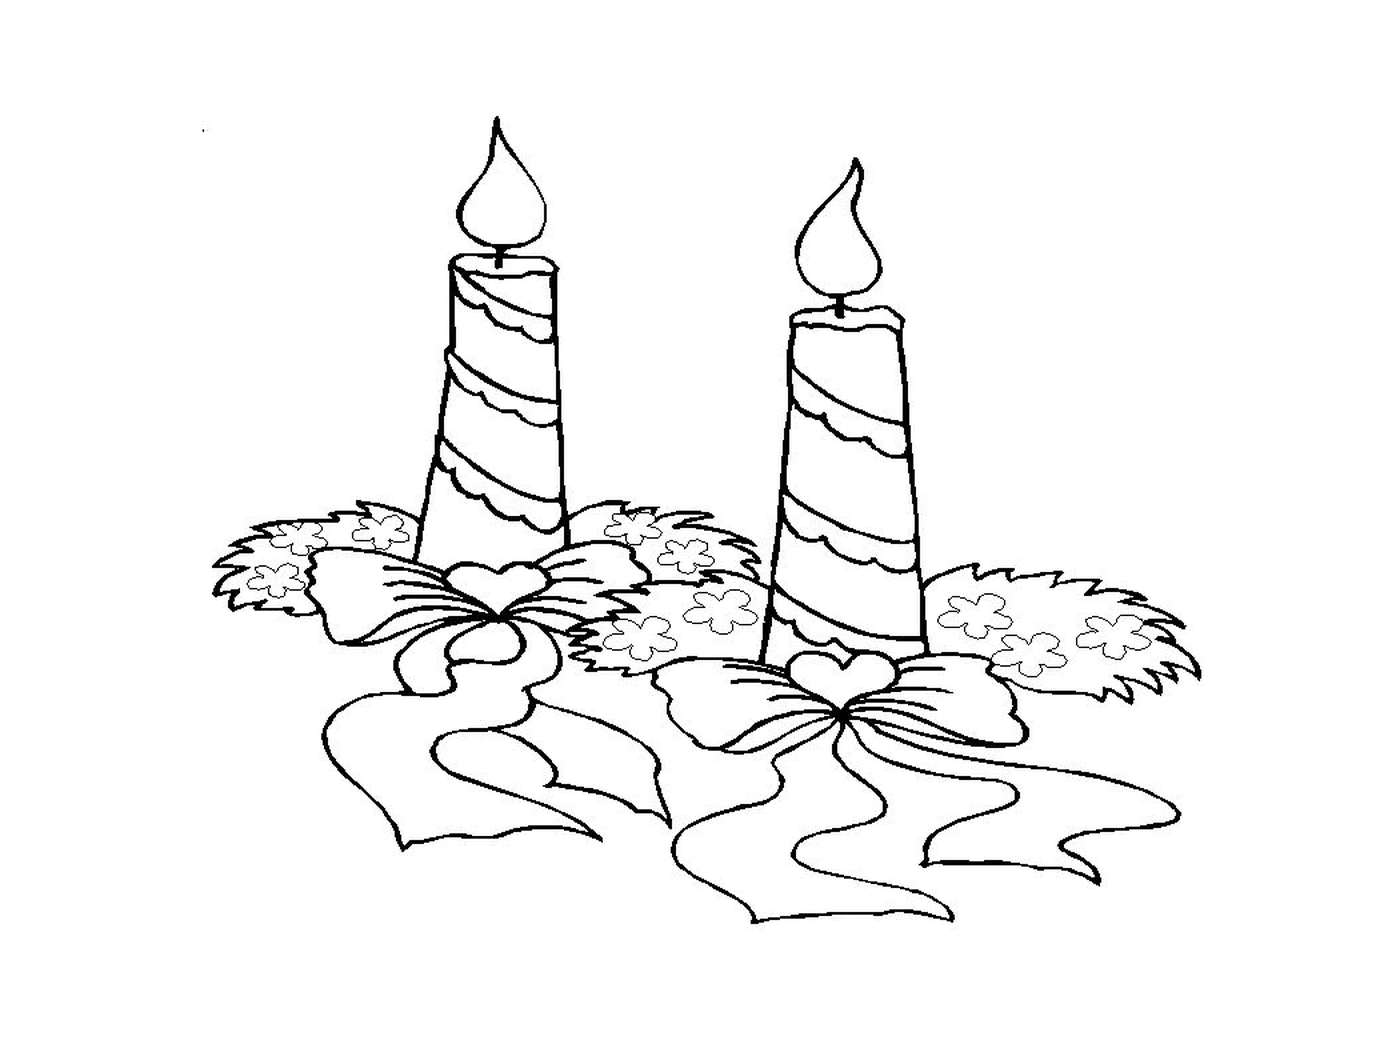   Deux bougies allumées posées sur le sol 